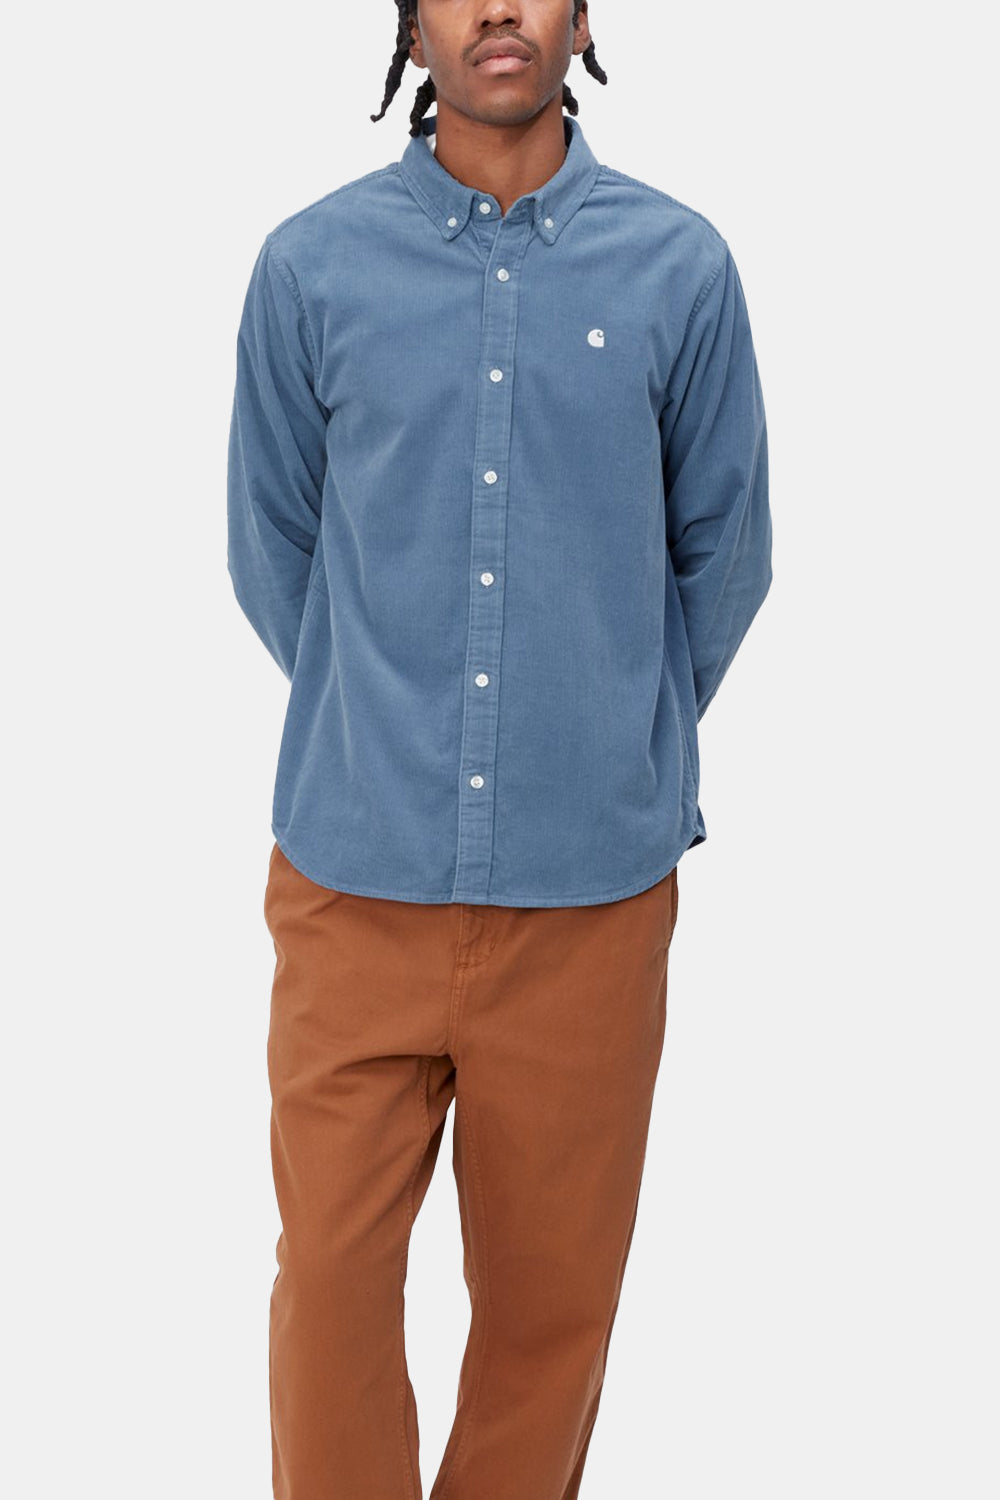 Carhartt WIP L/S Madison Fine Cord Shirt (Sorrent/Wax)